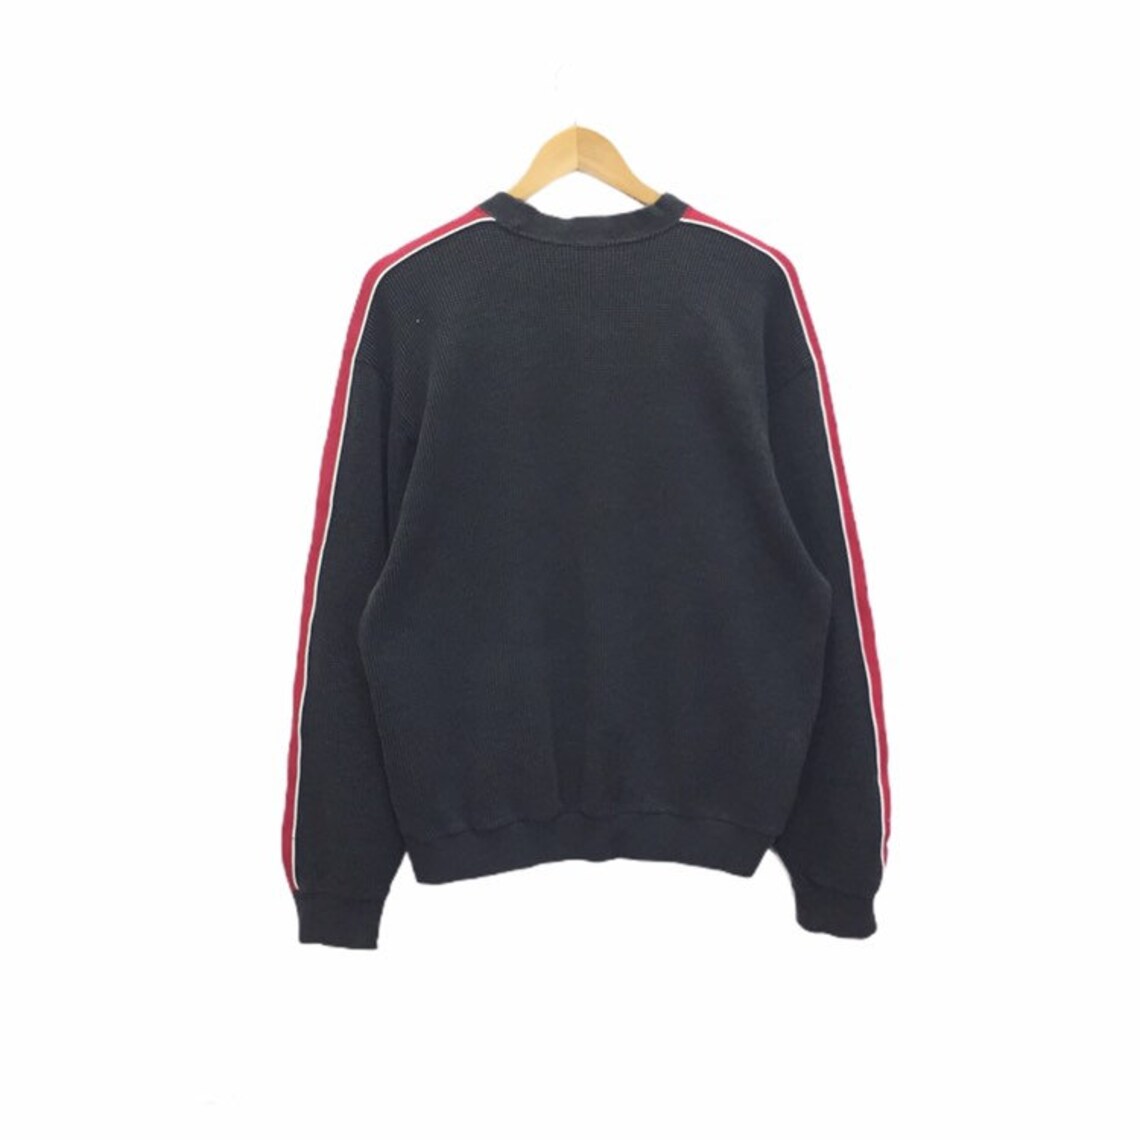 Rare Vintage Kappa Sweatshirt Pullover Jumper Sweater | Etsy